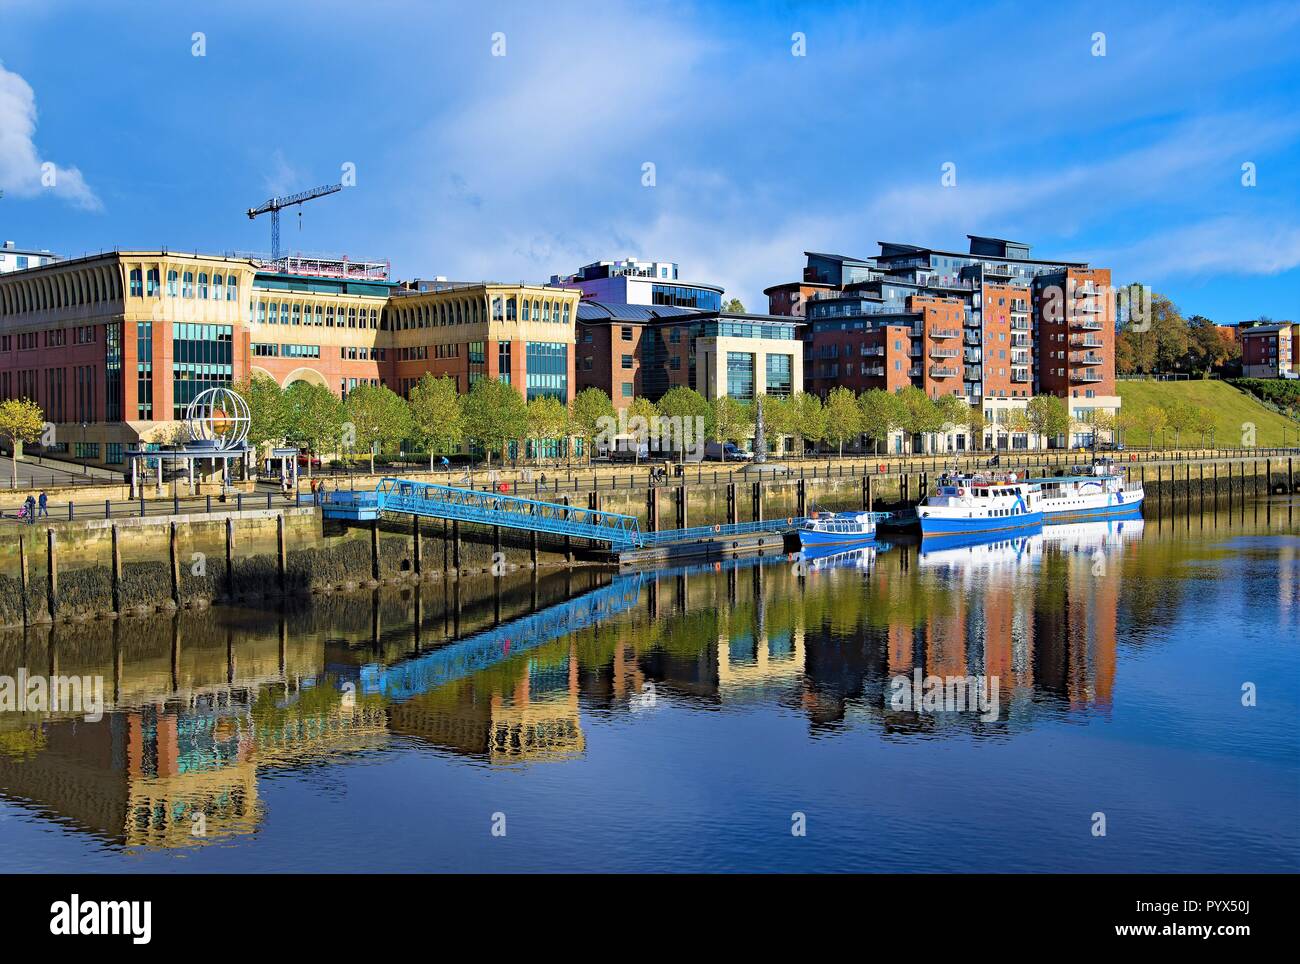 Perfect Blue Skies sobre el río Brew, creando reflexiones prístino de la interesante arquitectura en Gateshead. Foto de stock